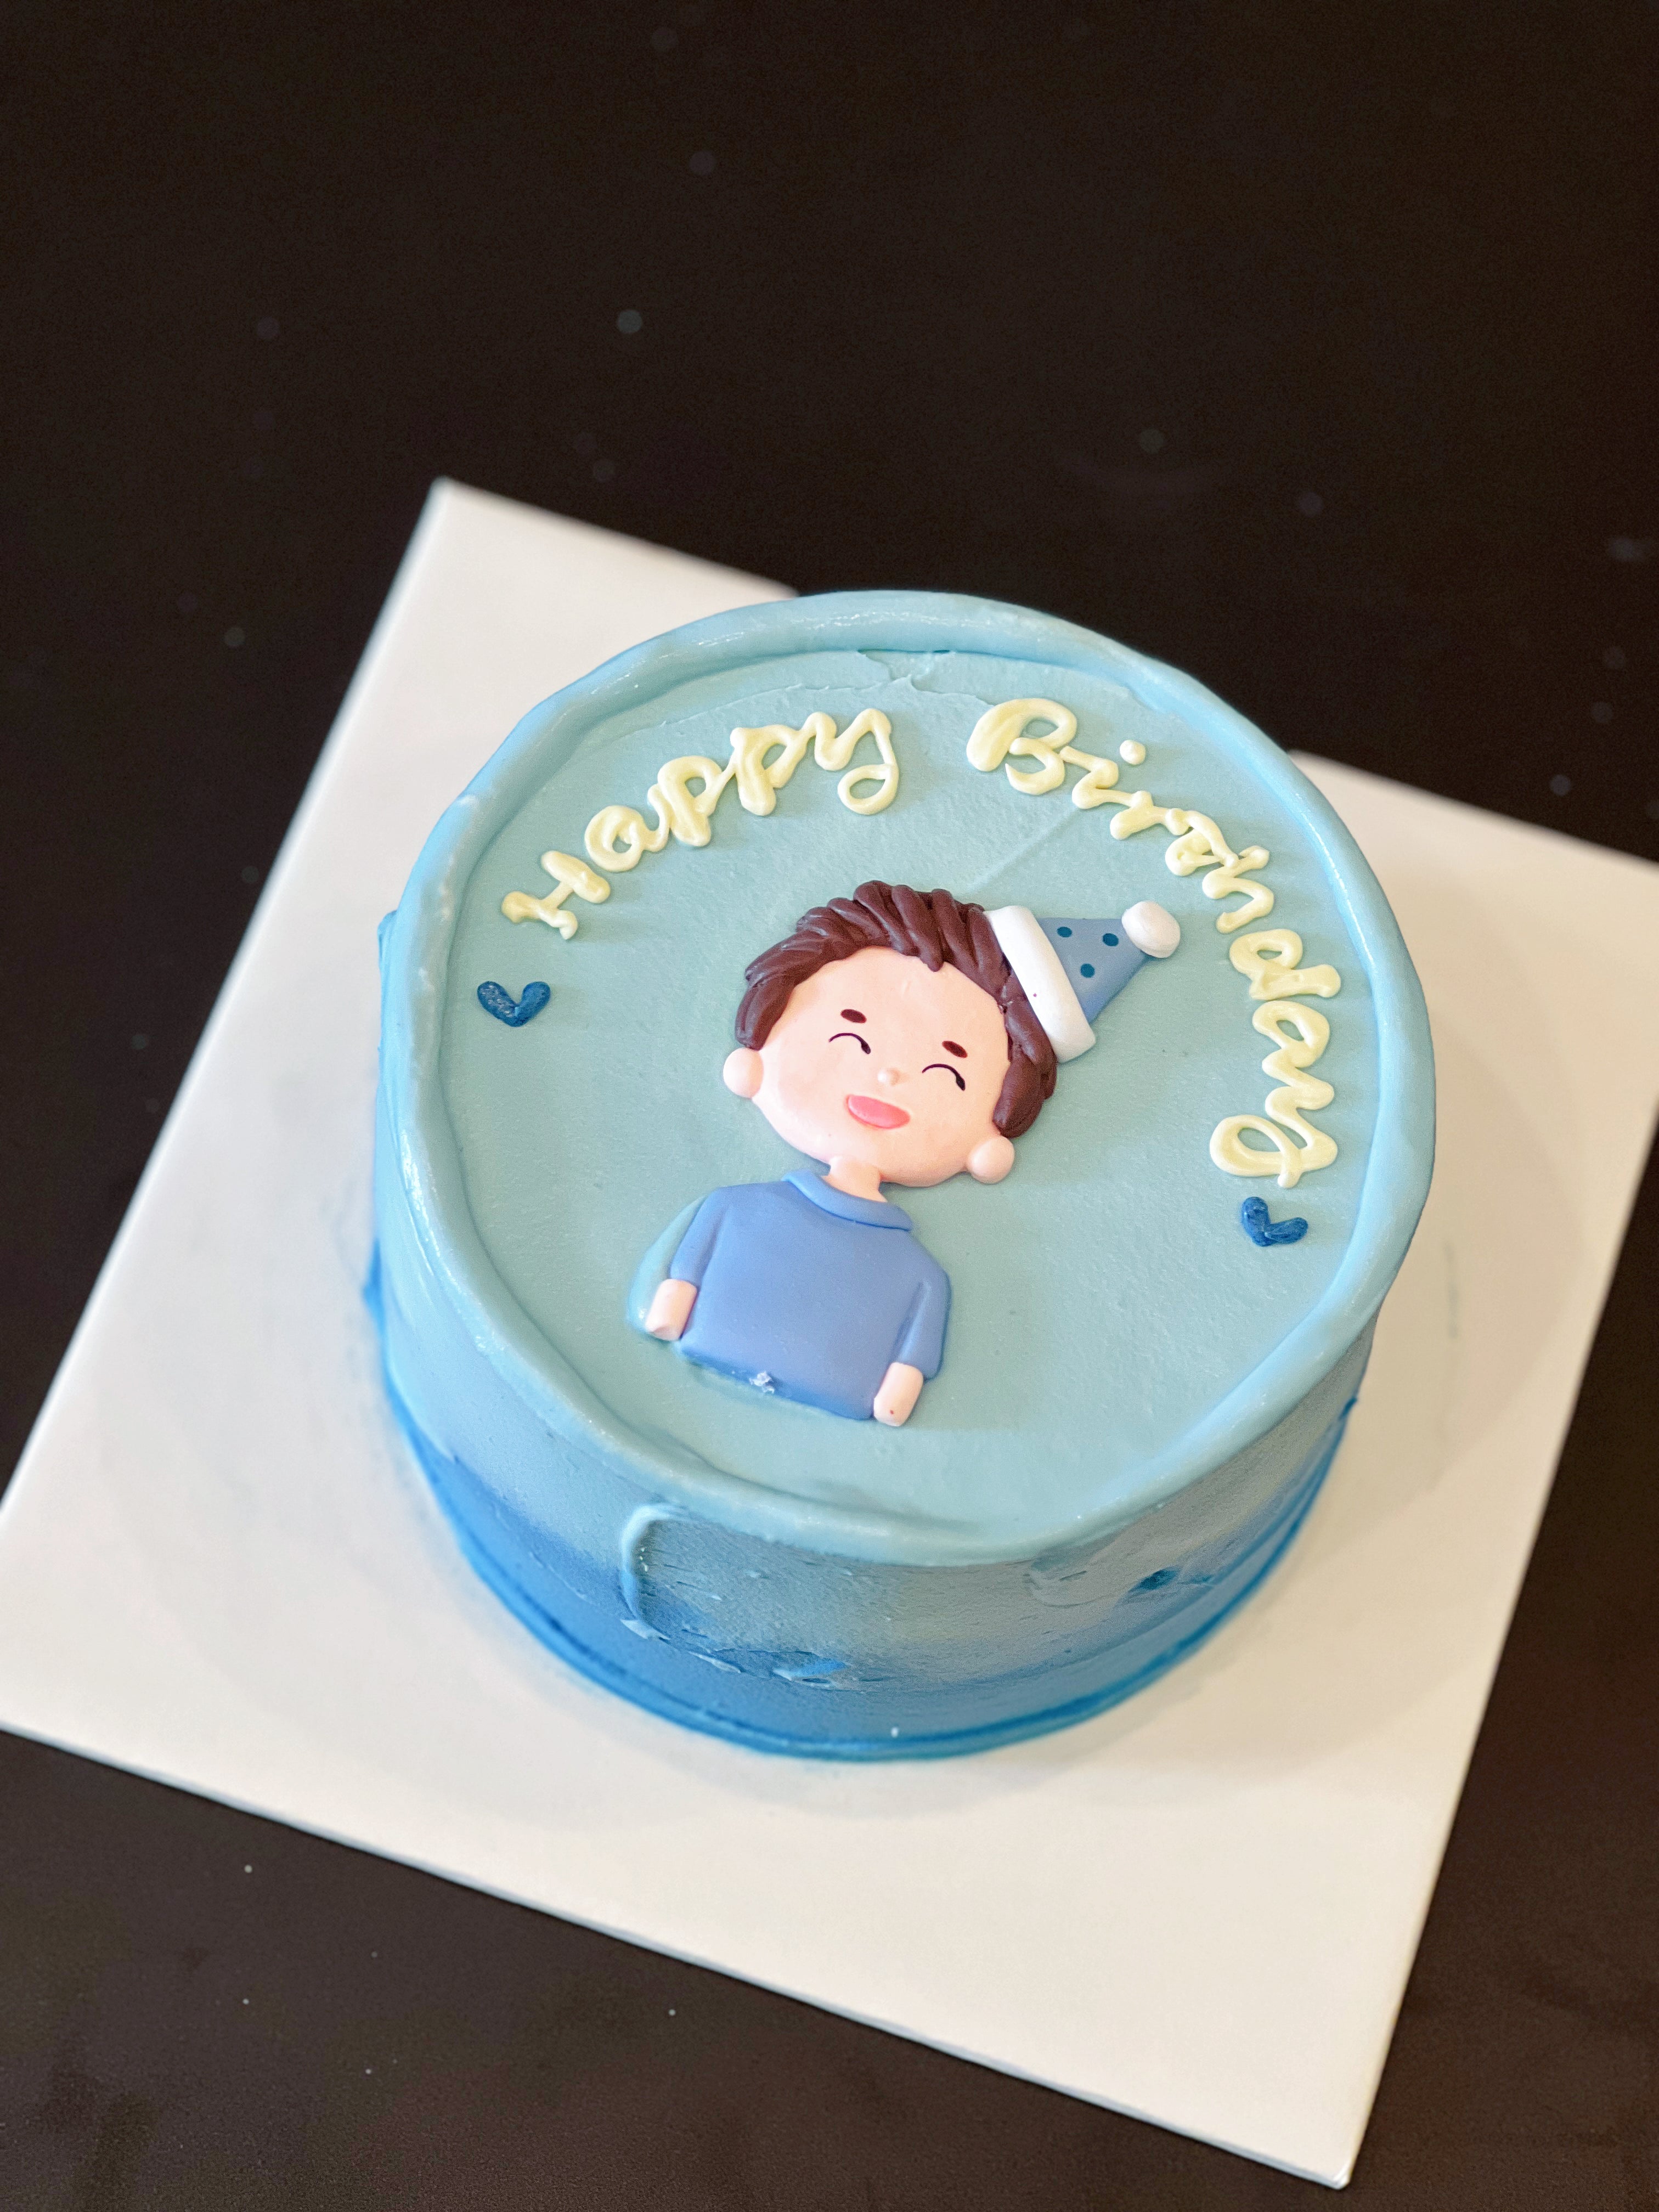 Birthday Boy Cake